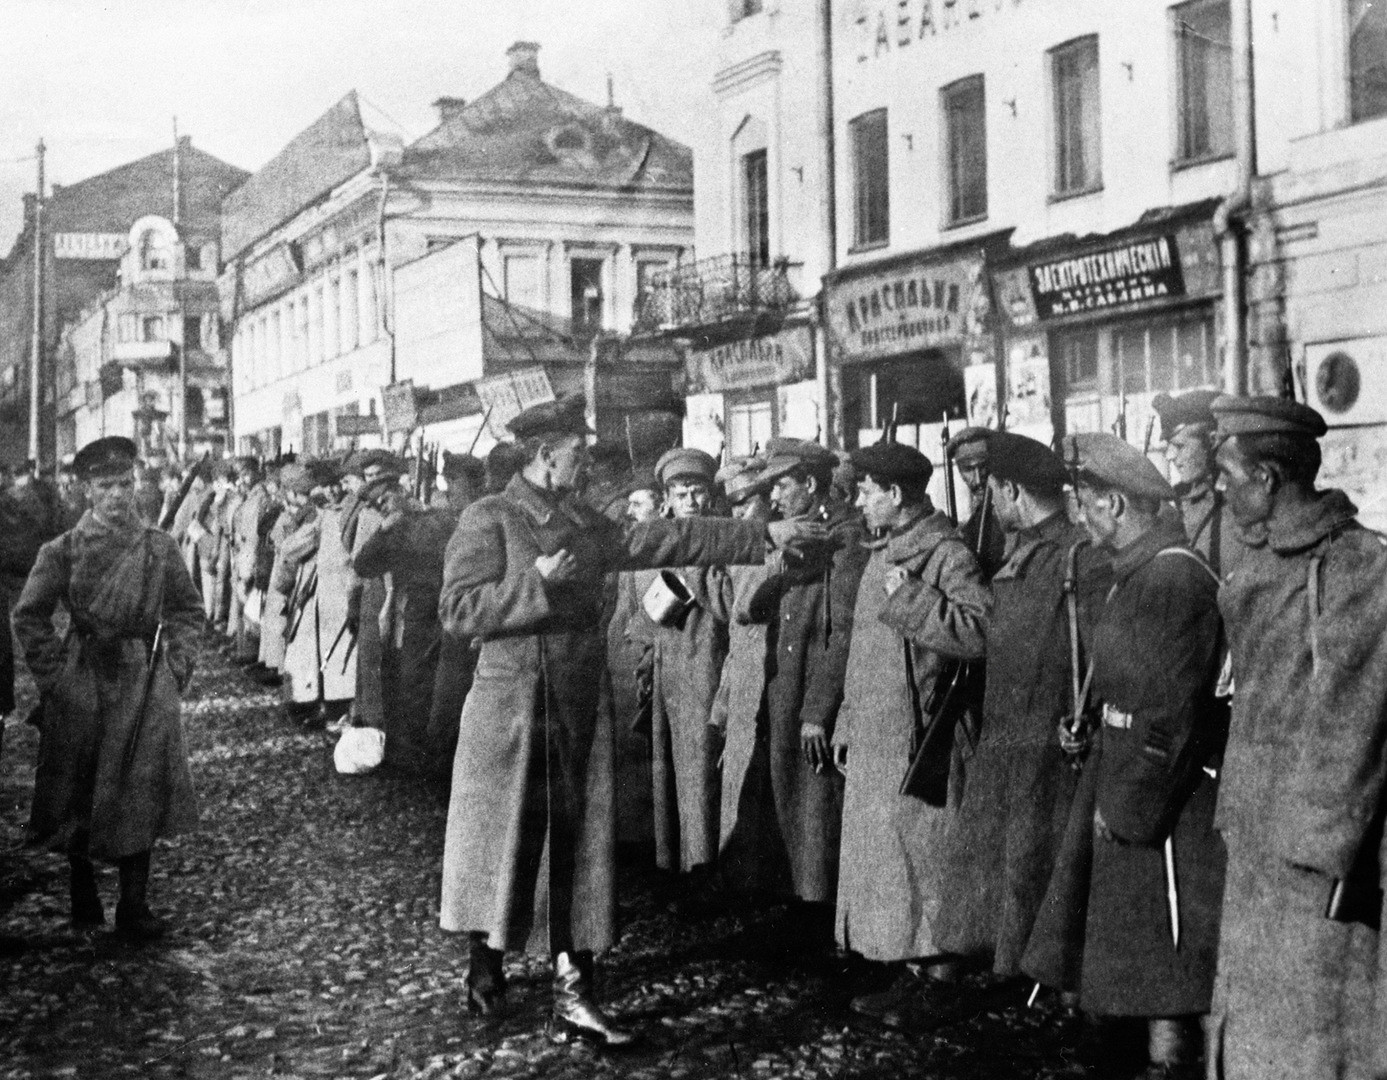 1920. Бойцы продовольственного отряда стоят в строю перед отправкой в деревню